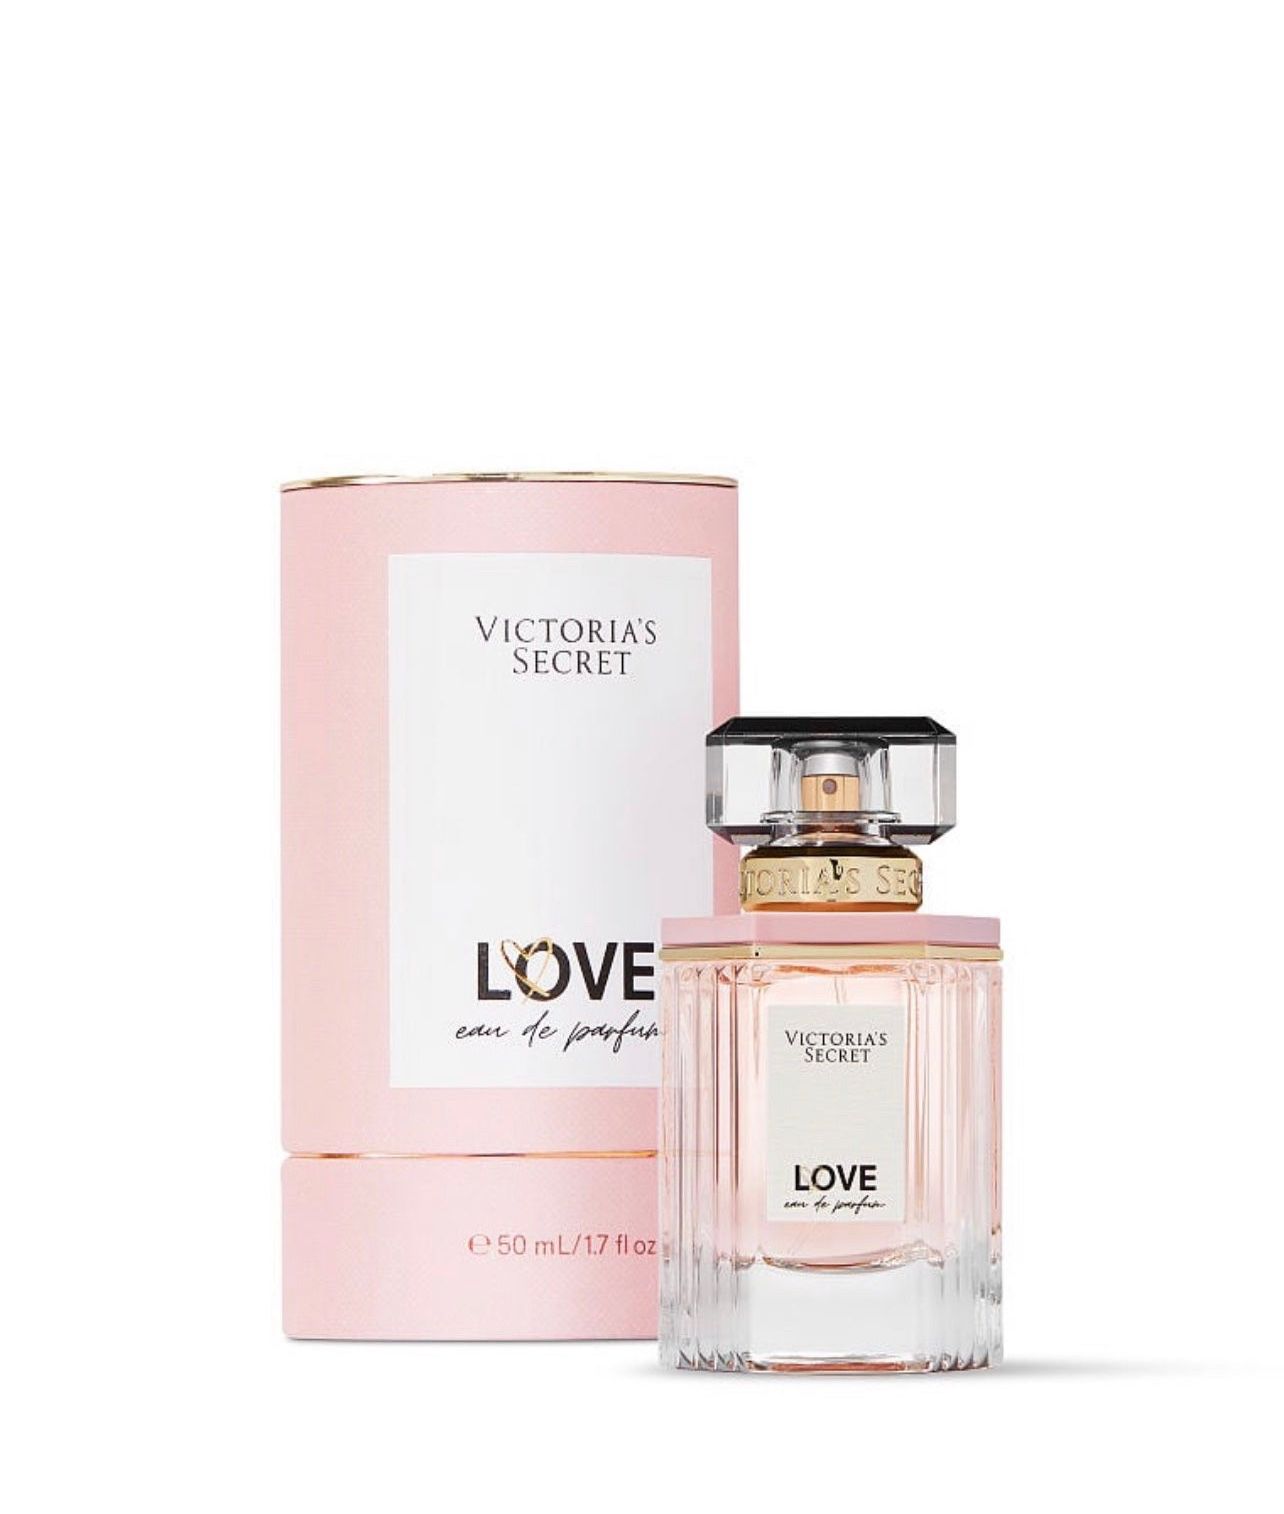 Victoria’s Secret “LOVE” Eau de Parfum